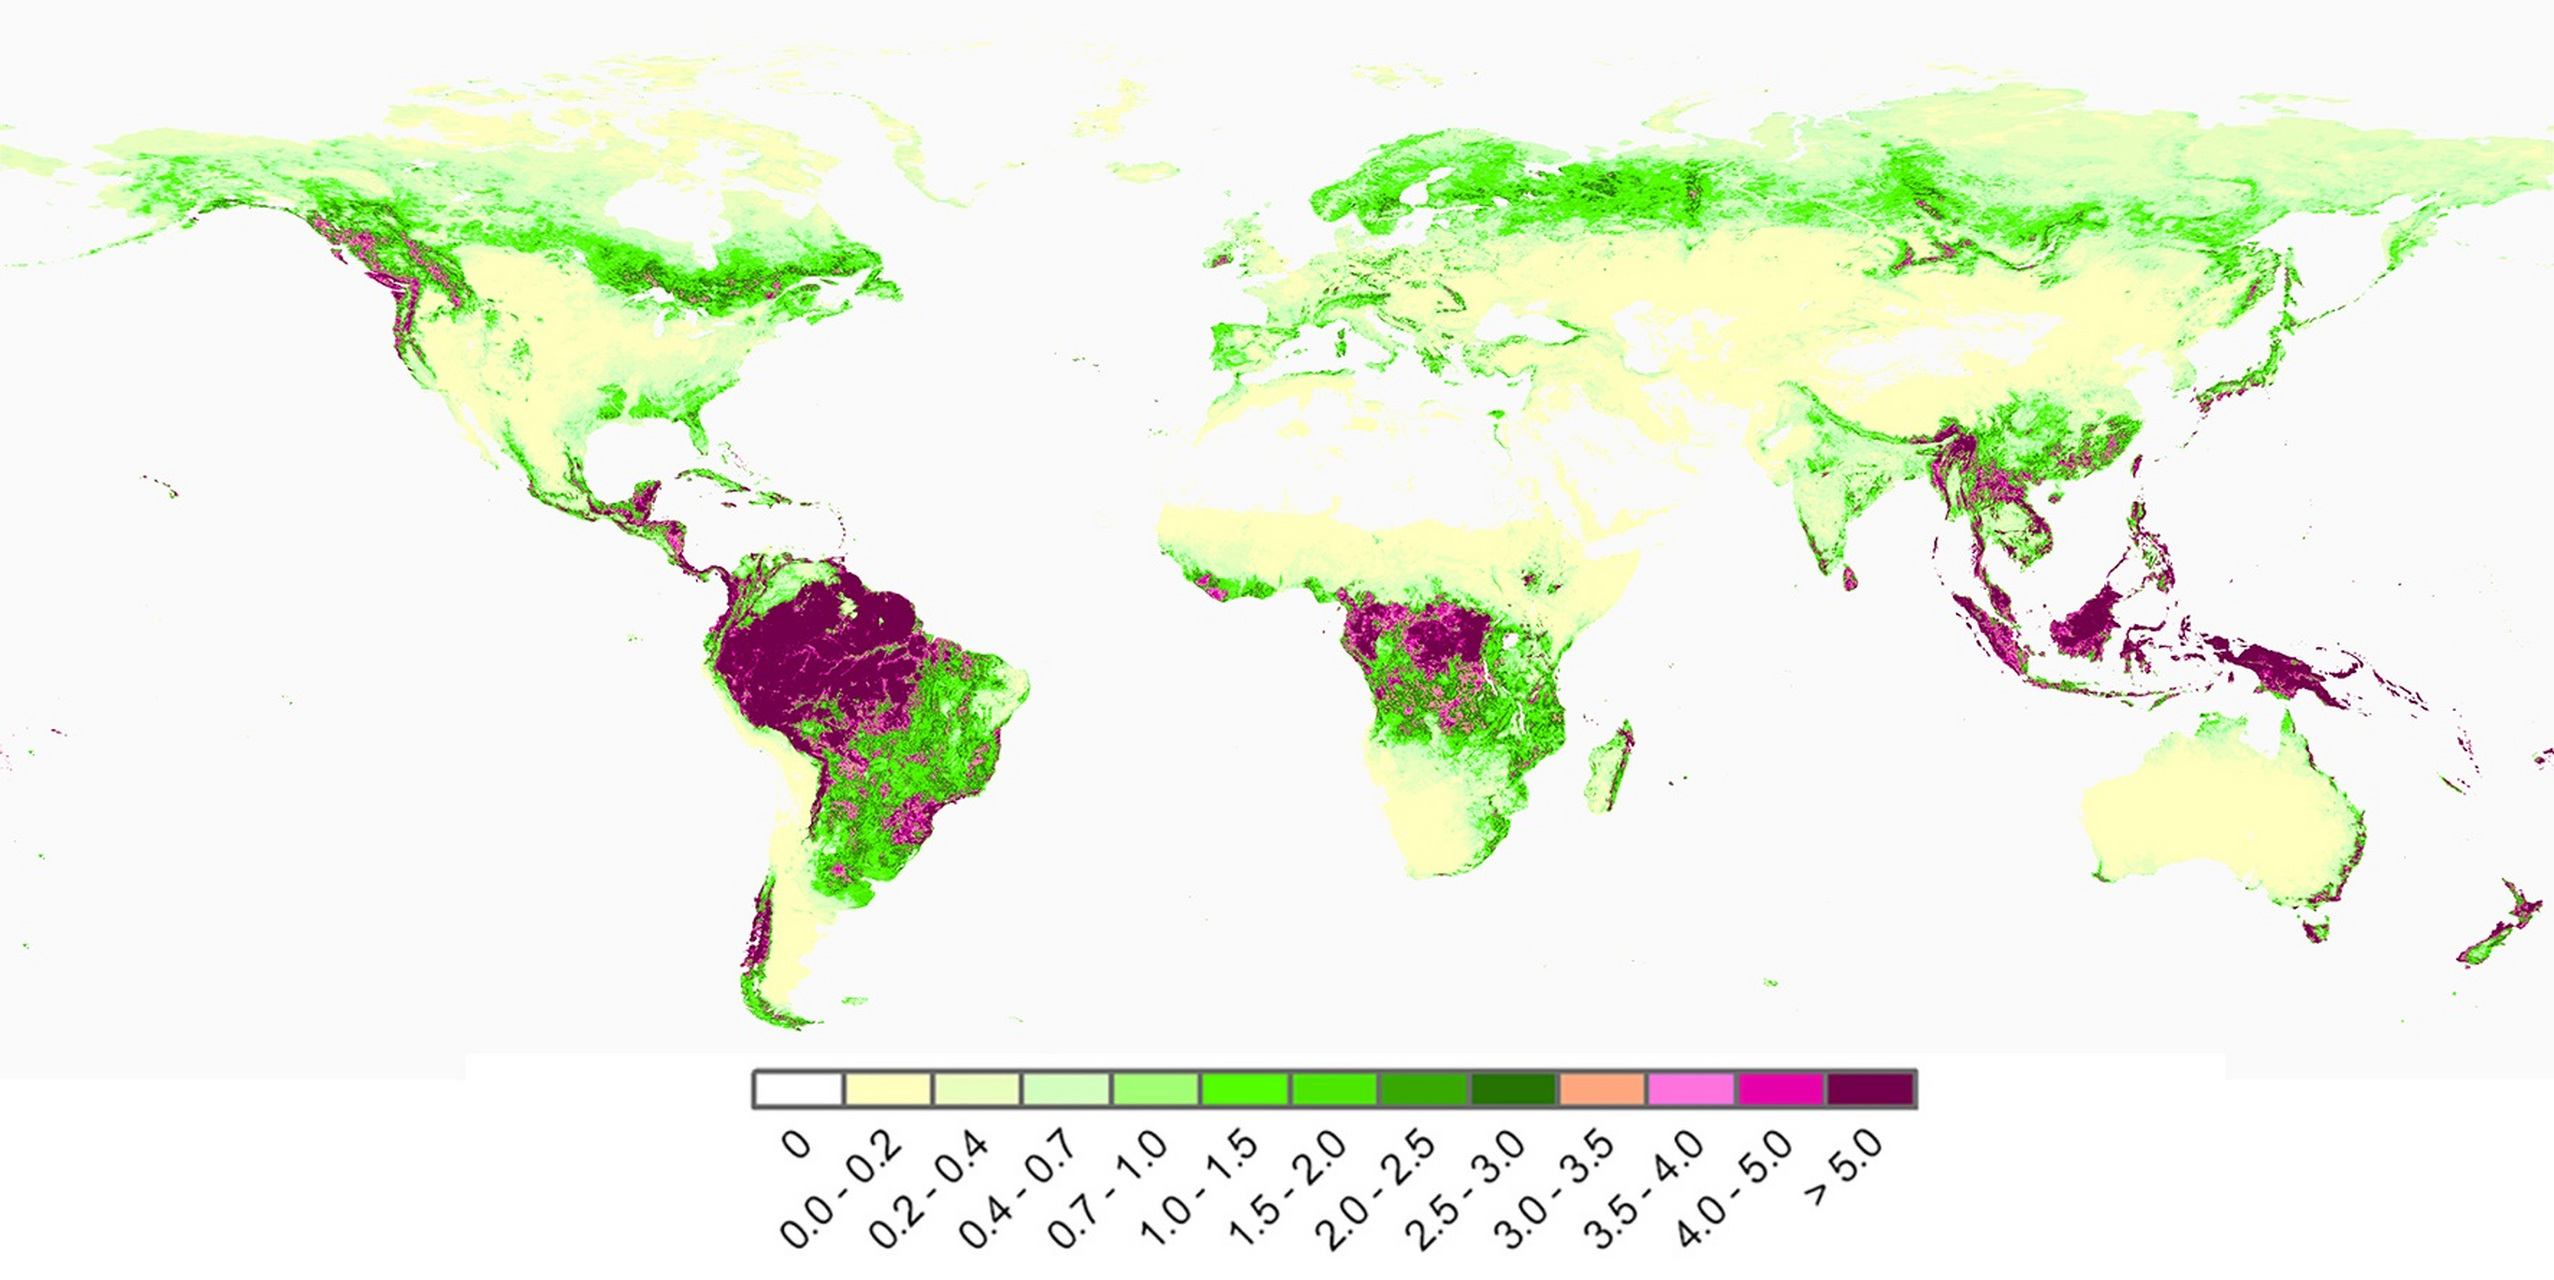 2019年全球植被叶面积指数分布图